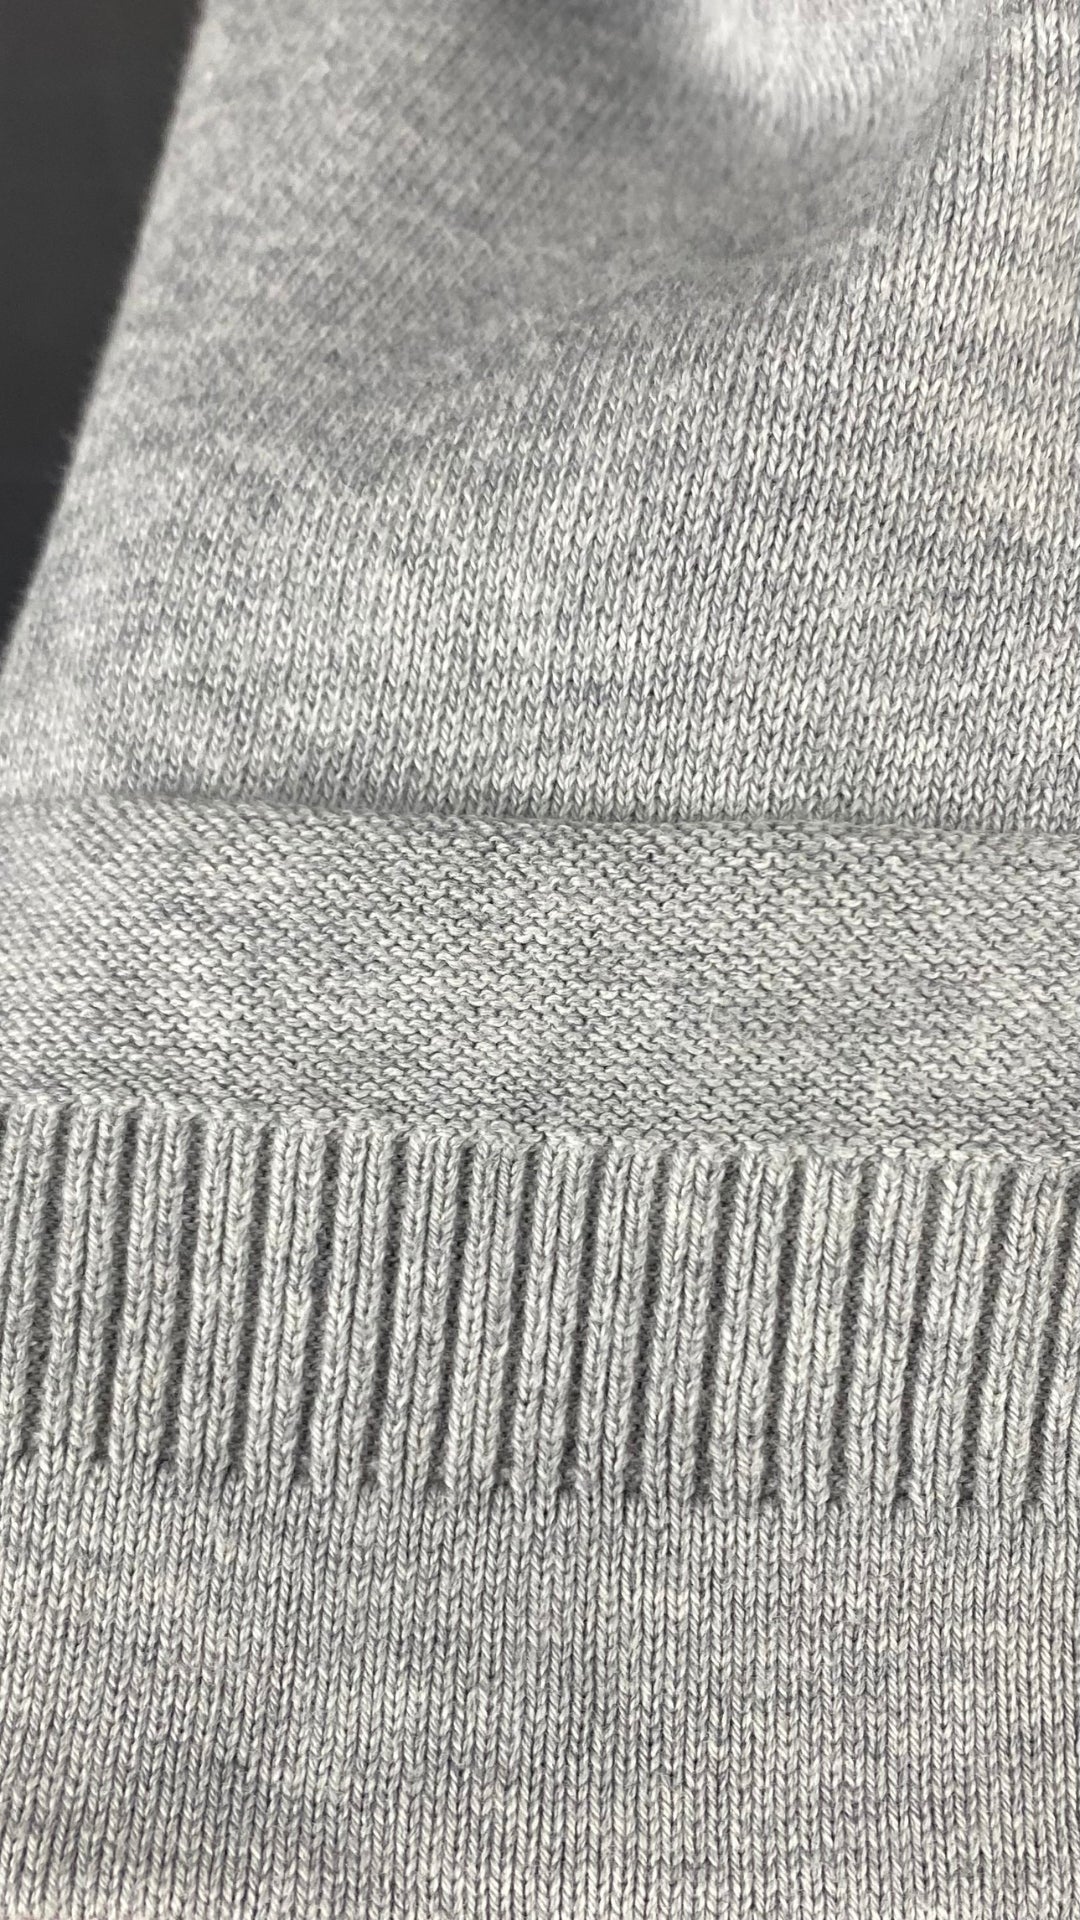 Chandail long tricot gris coton égyptien Ça va de soi, taille medium. Vue du bas de la manche.